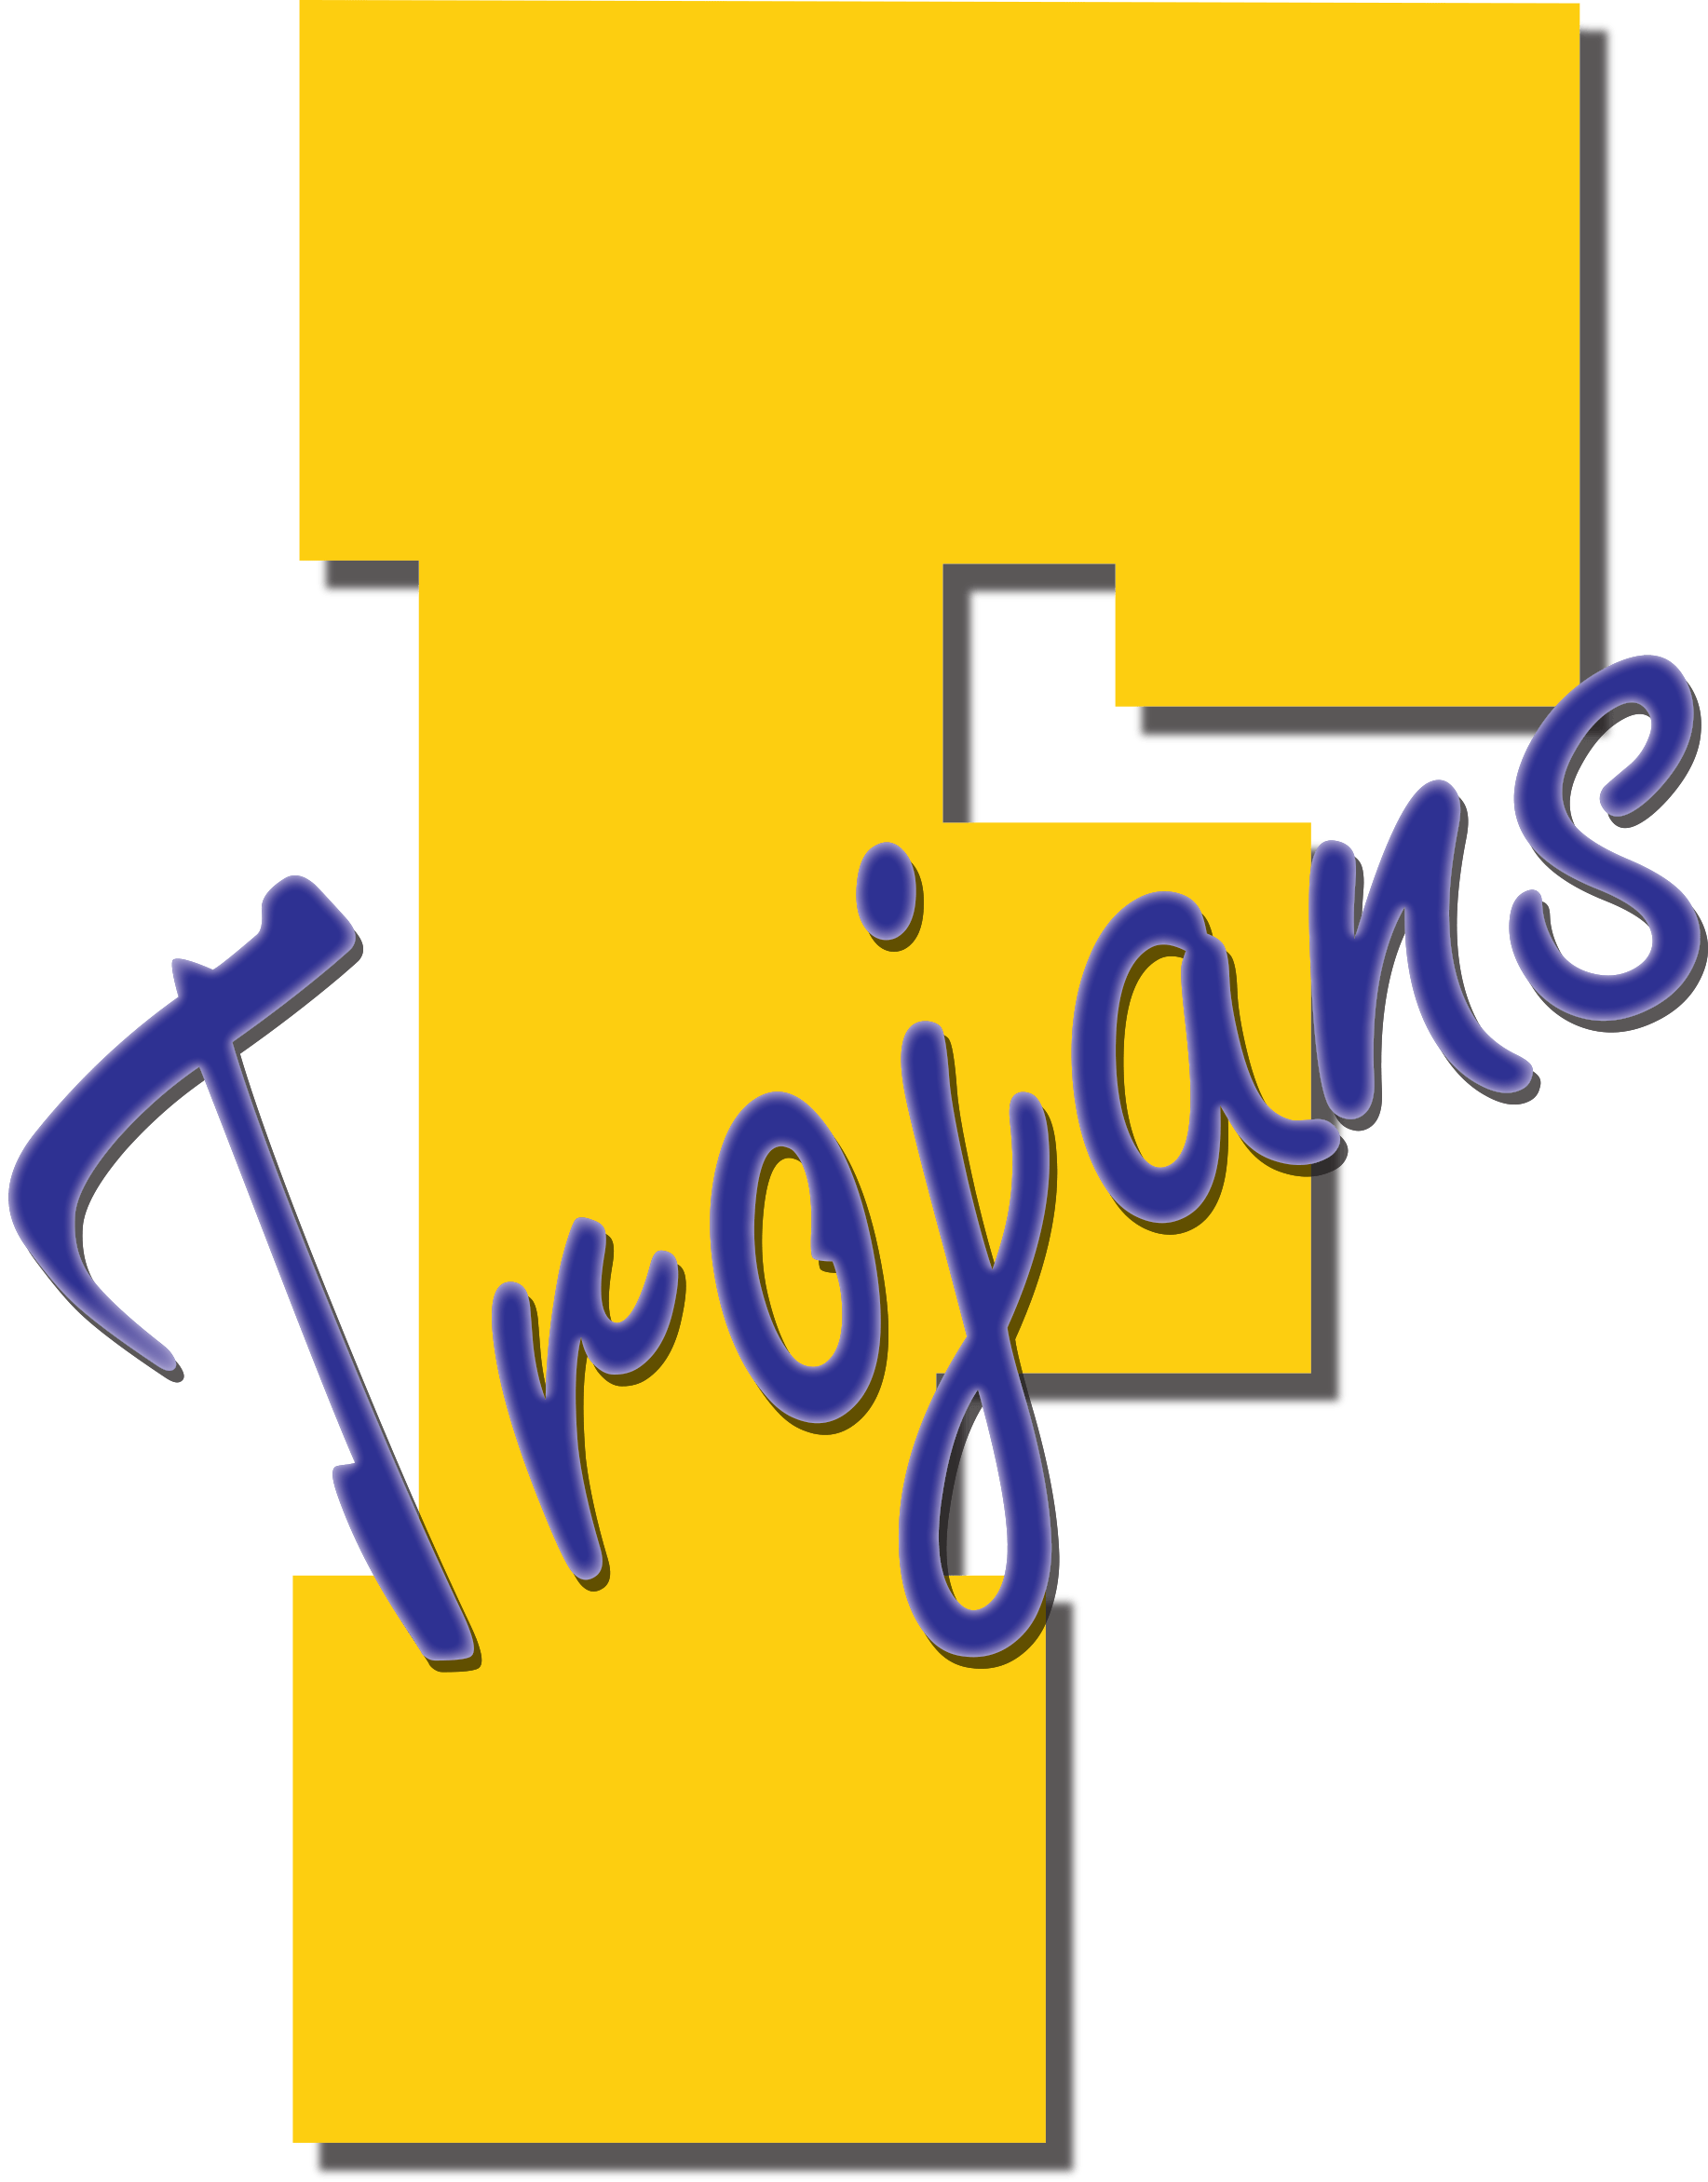 Findlay Logo - The Findlay Trojans